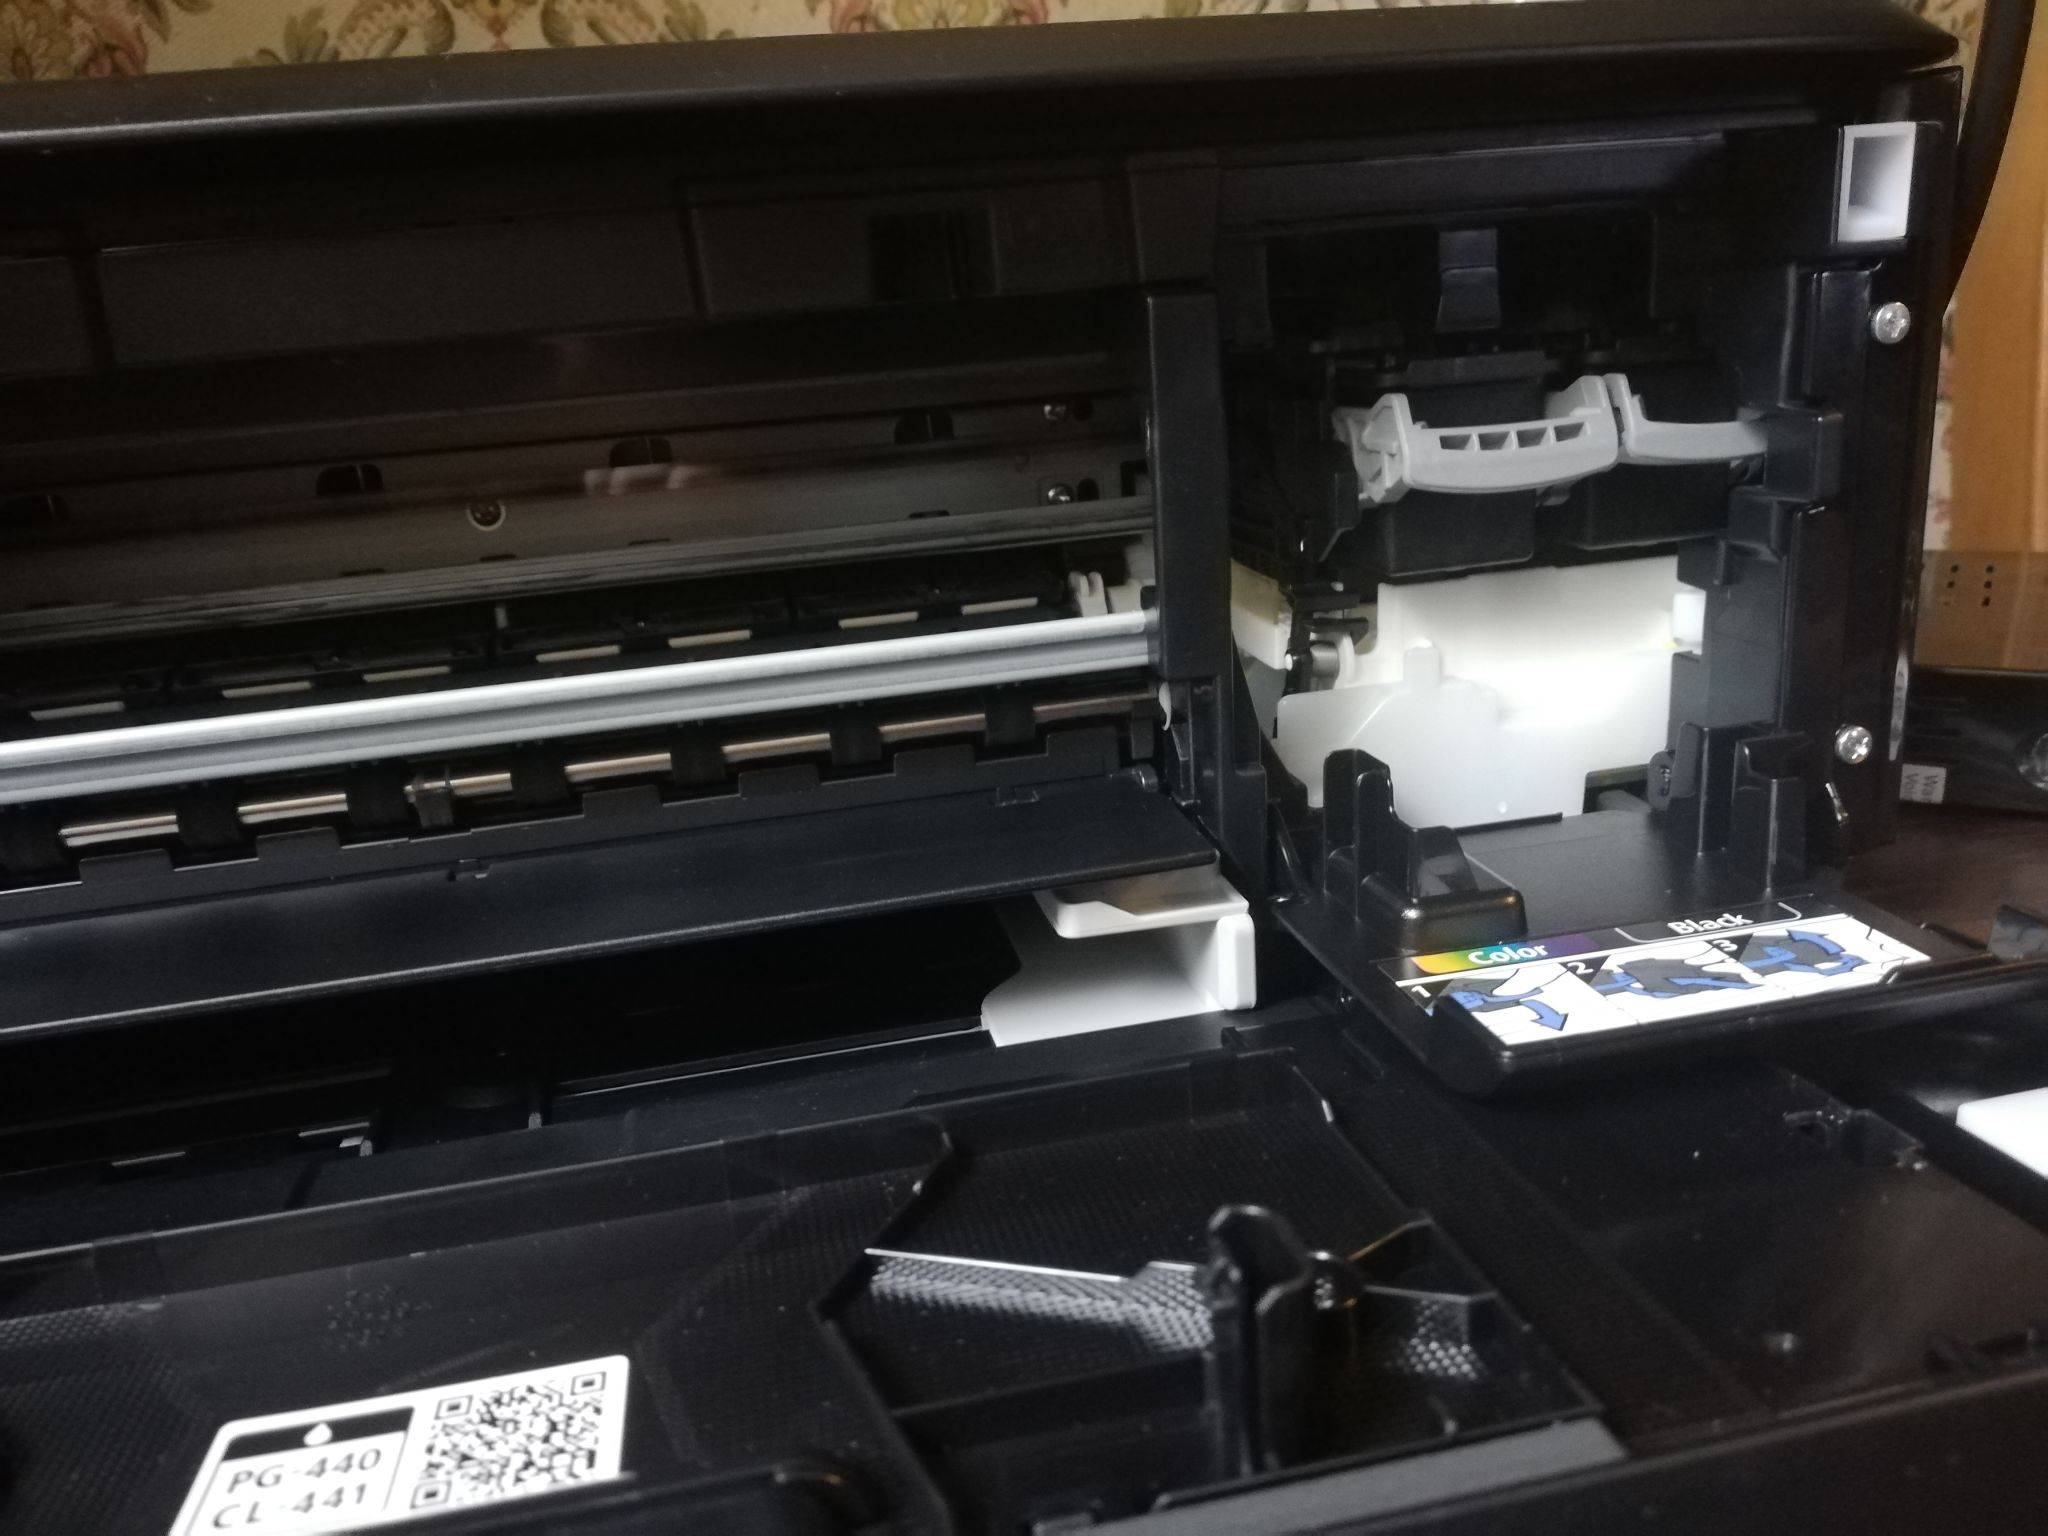 Как вставить картридж в принтер: пошаговая инструкция